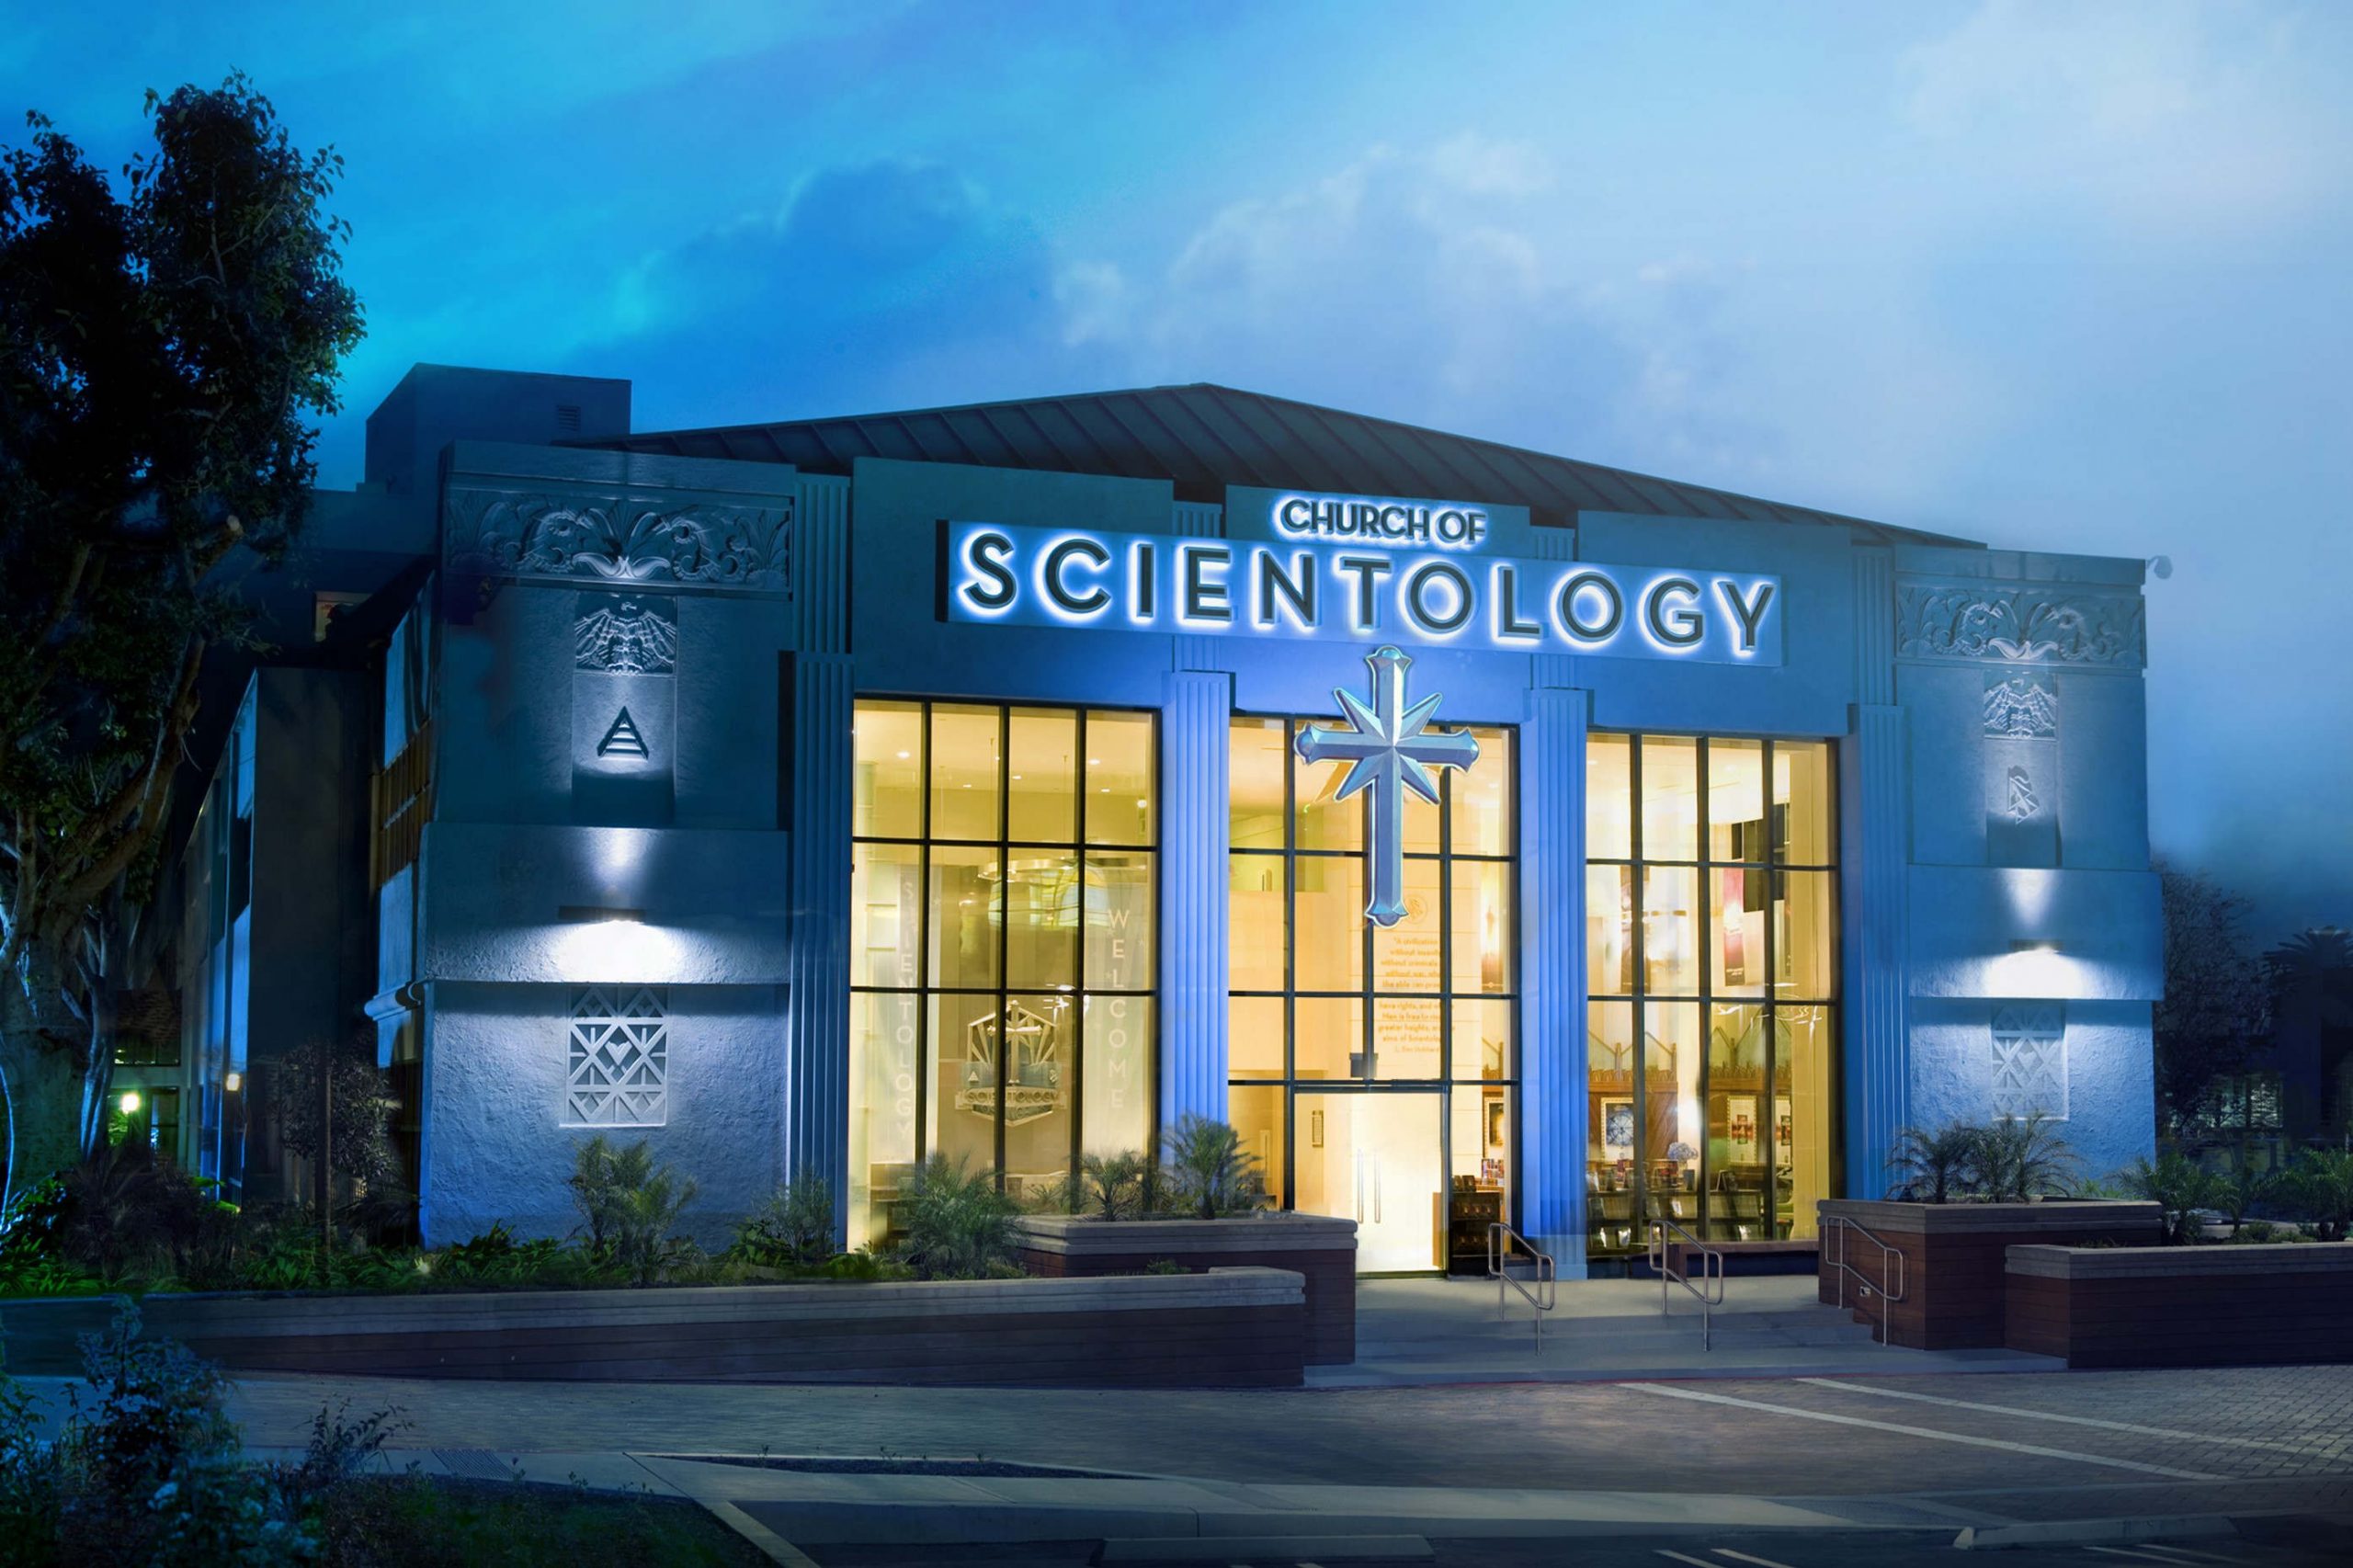 L'église de scientologie à Los Angeles (wikimedia commons)